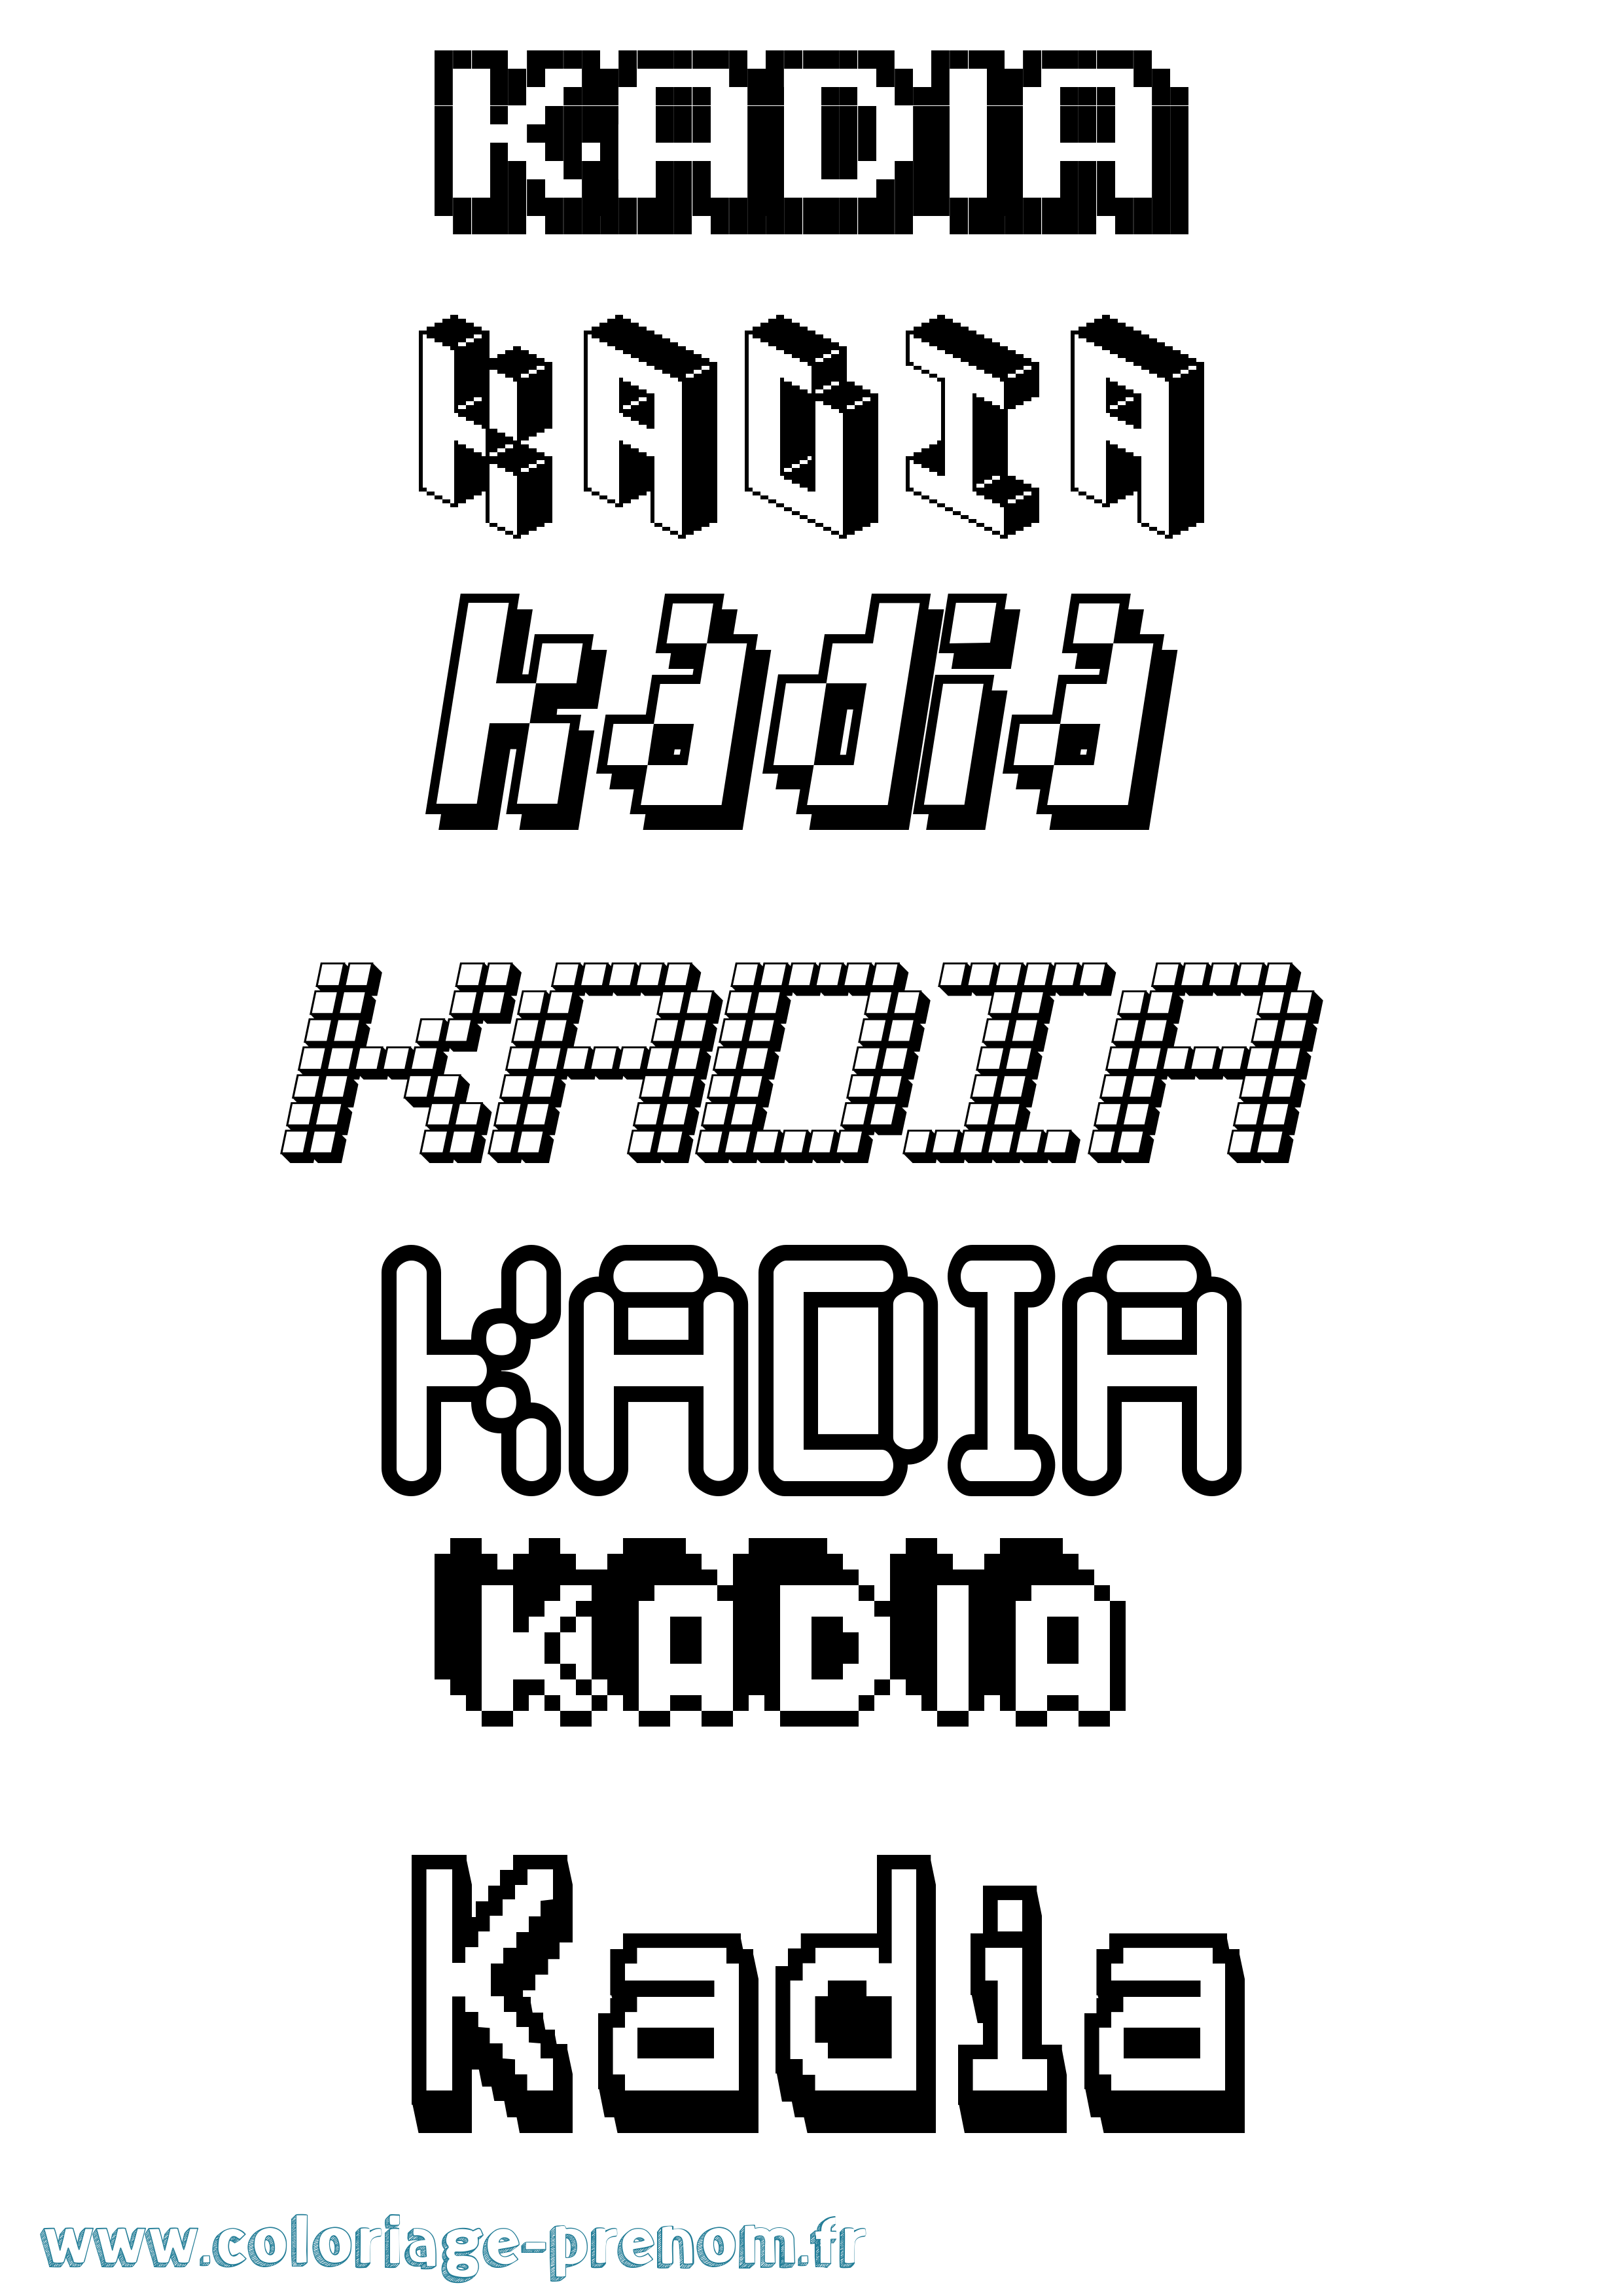 Coloriage prénom Kadia Pixel